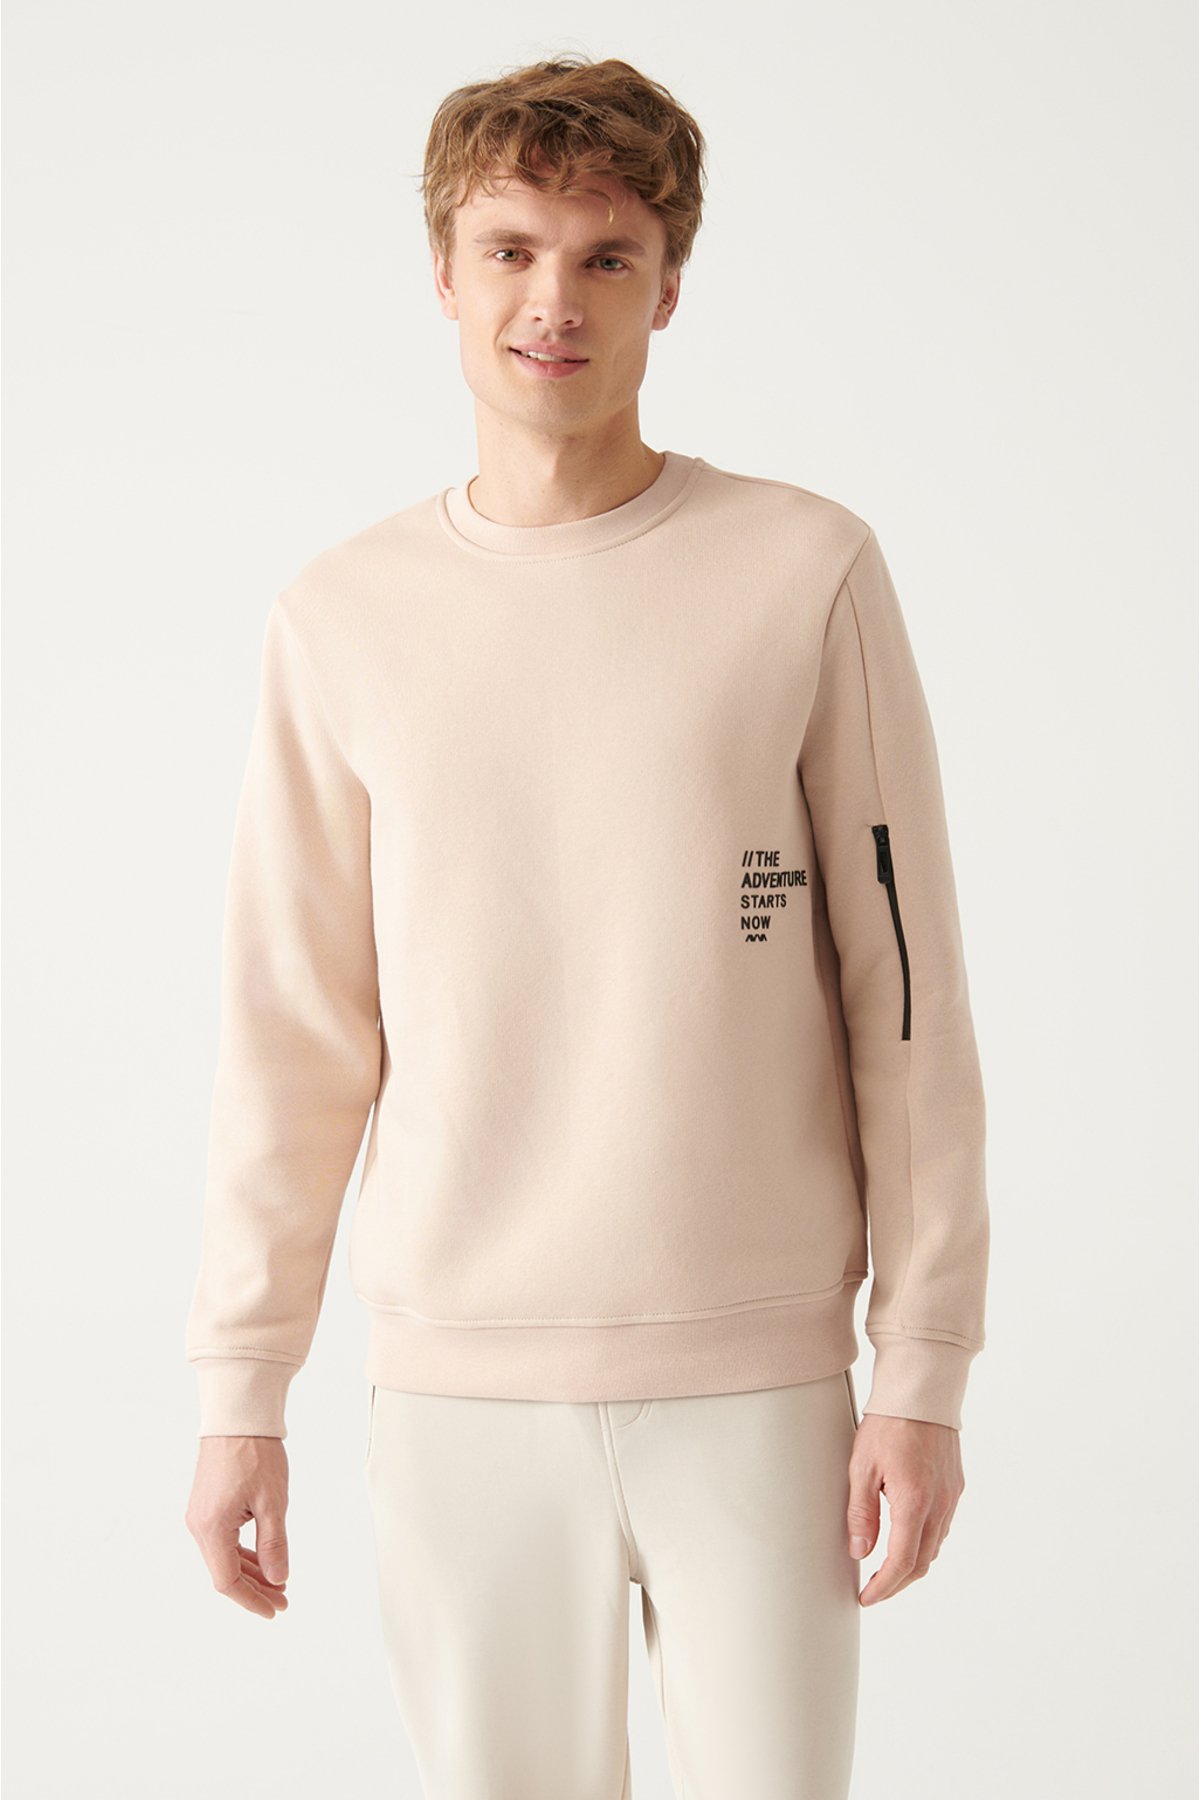 Avva Men's Beige Crew Neck Printed Standard Fit Regular Cut Sweatshirt